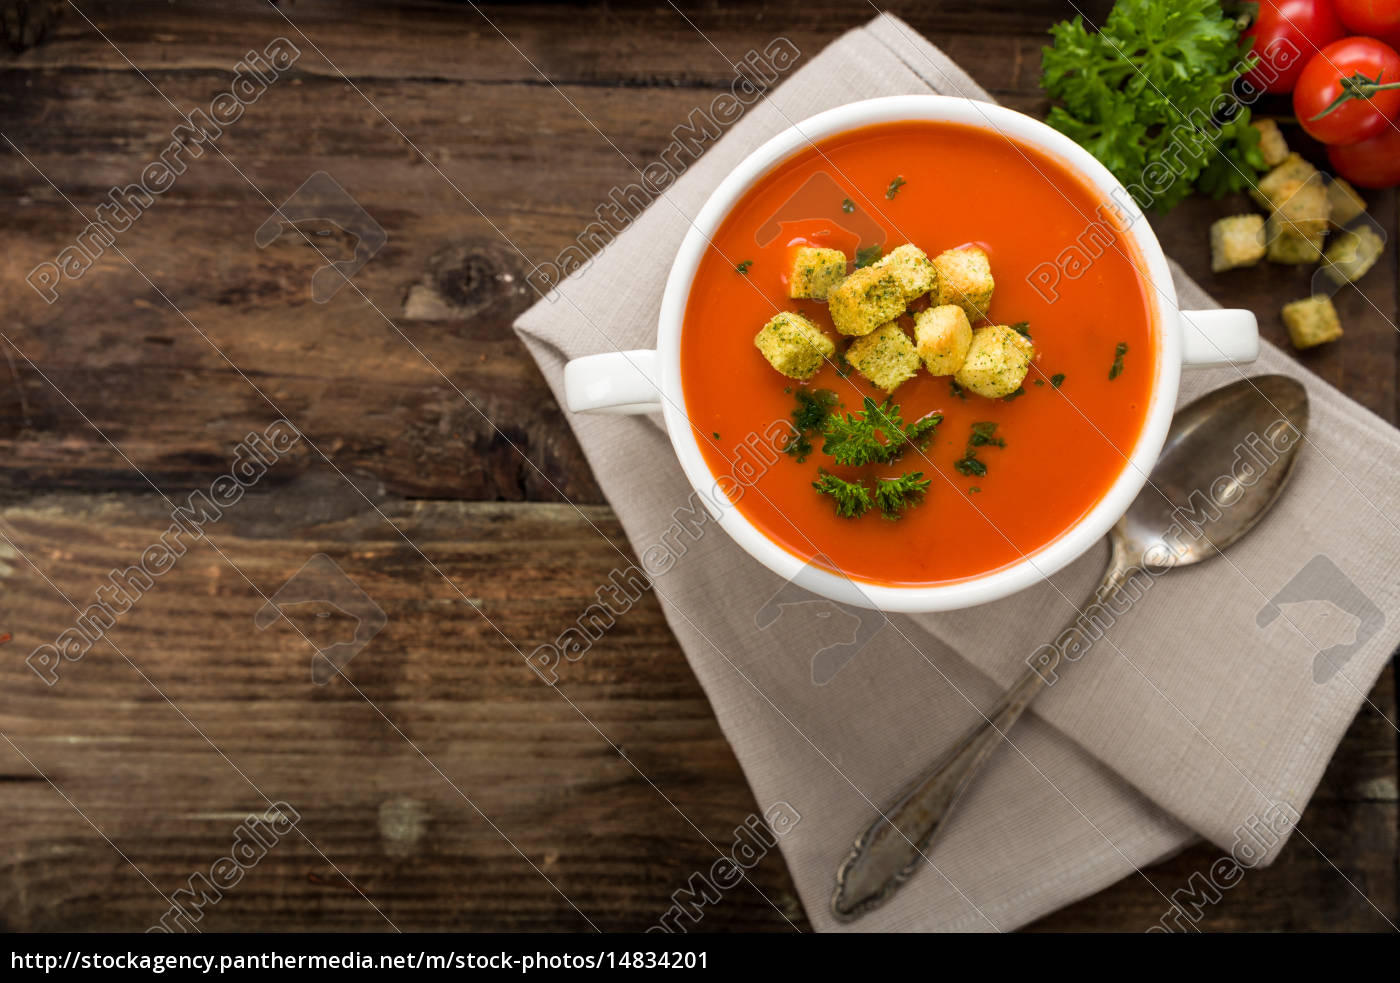 Tomatensuppe mit Croutons - Lizenzfreies Bild - #14834201 | Bildagentur ...